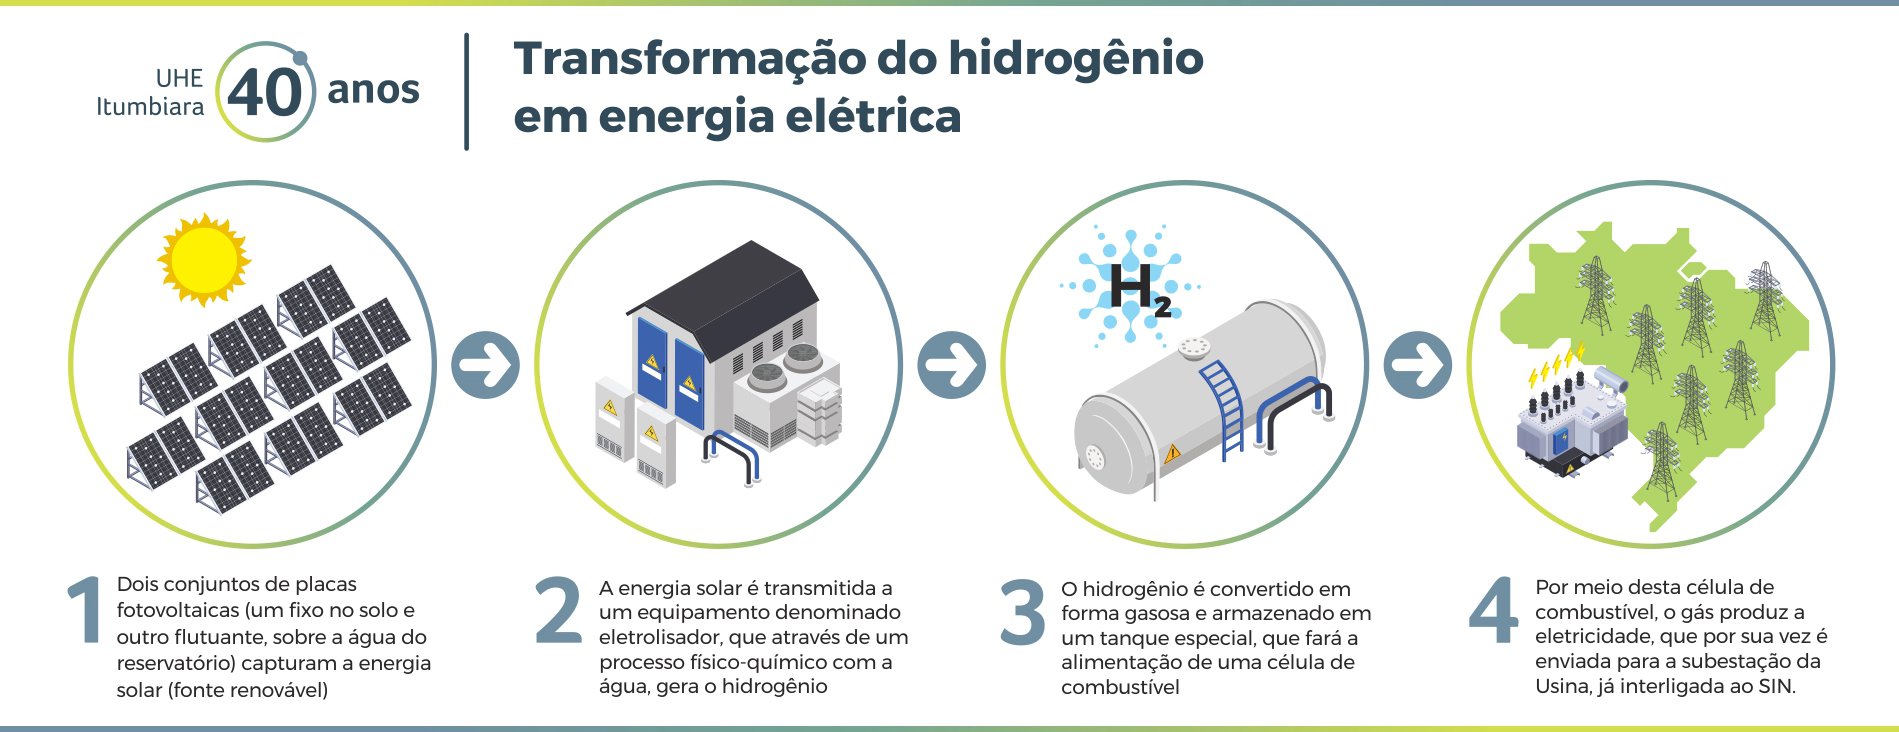 Transformação do hidrogênio em energia elétrica